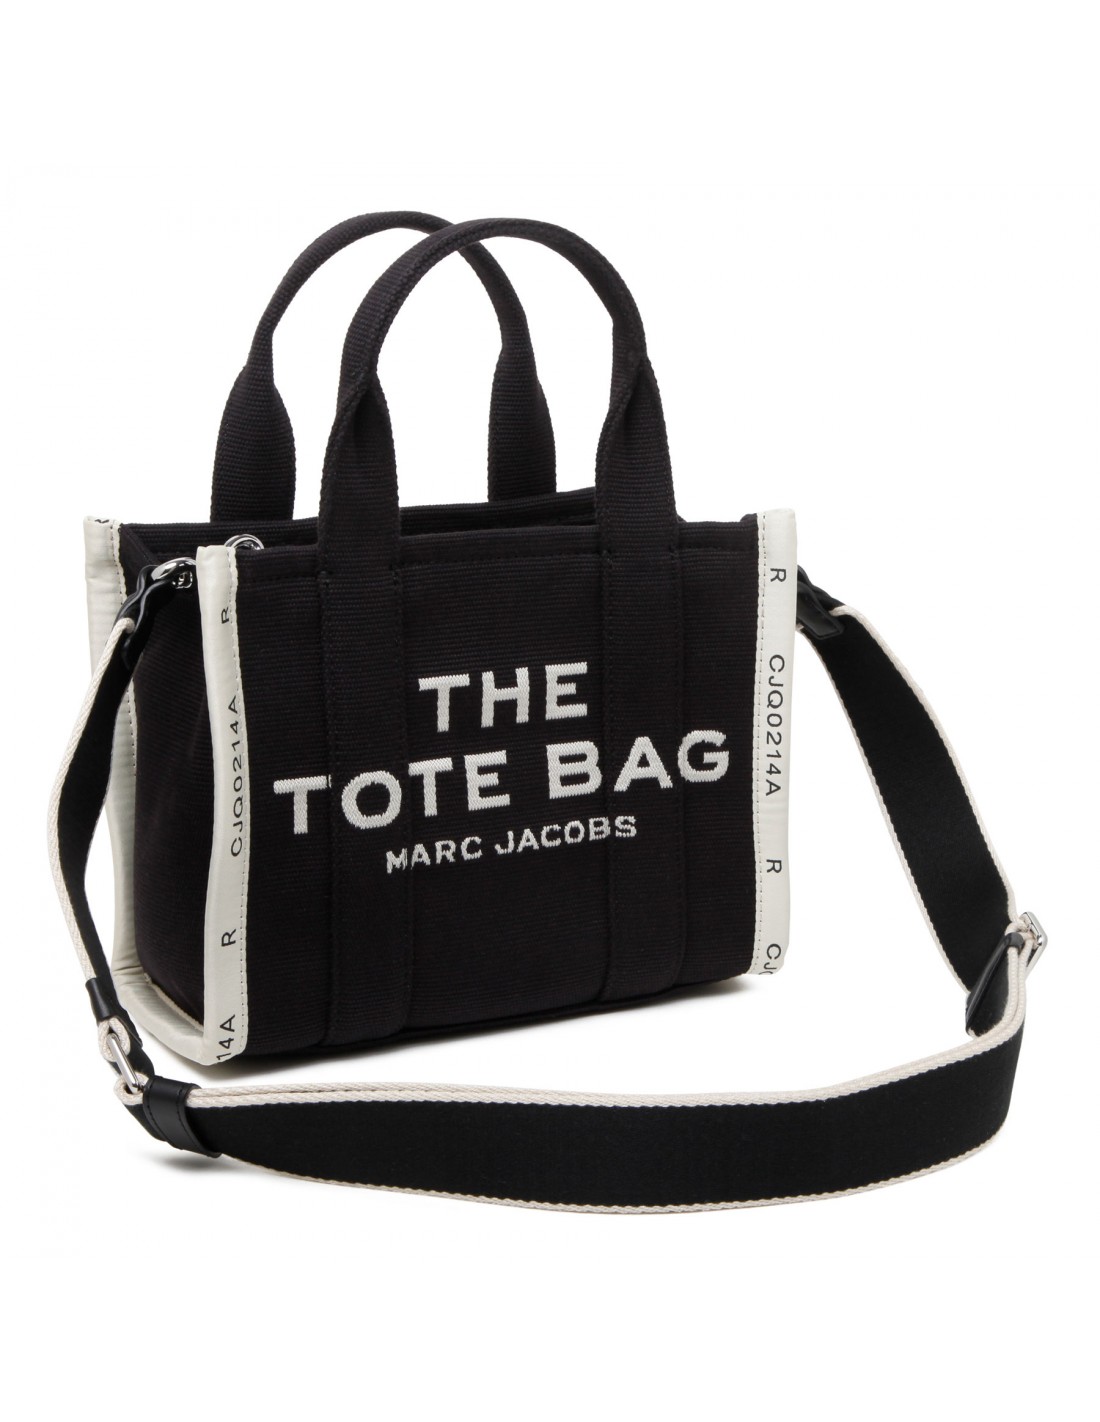 The Jacquard Mini tote bag